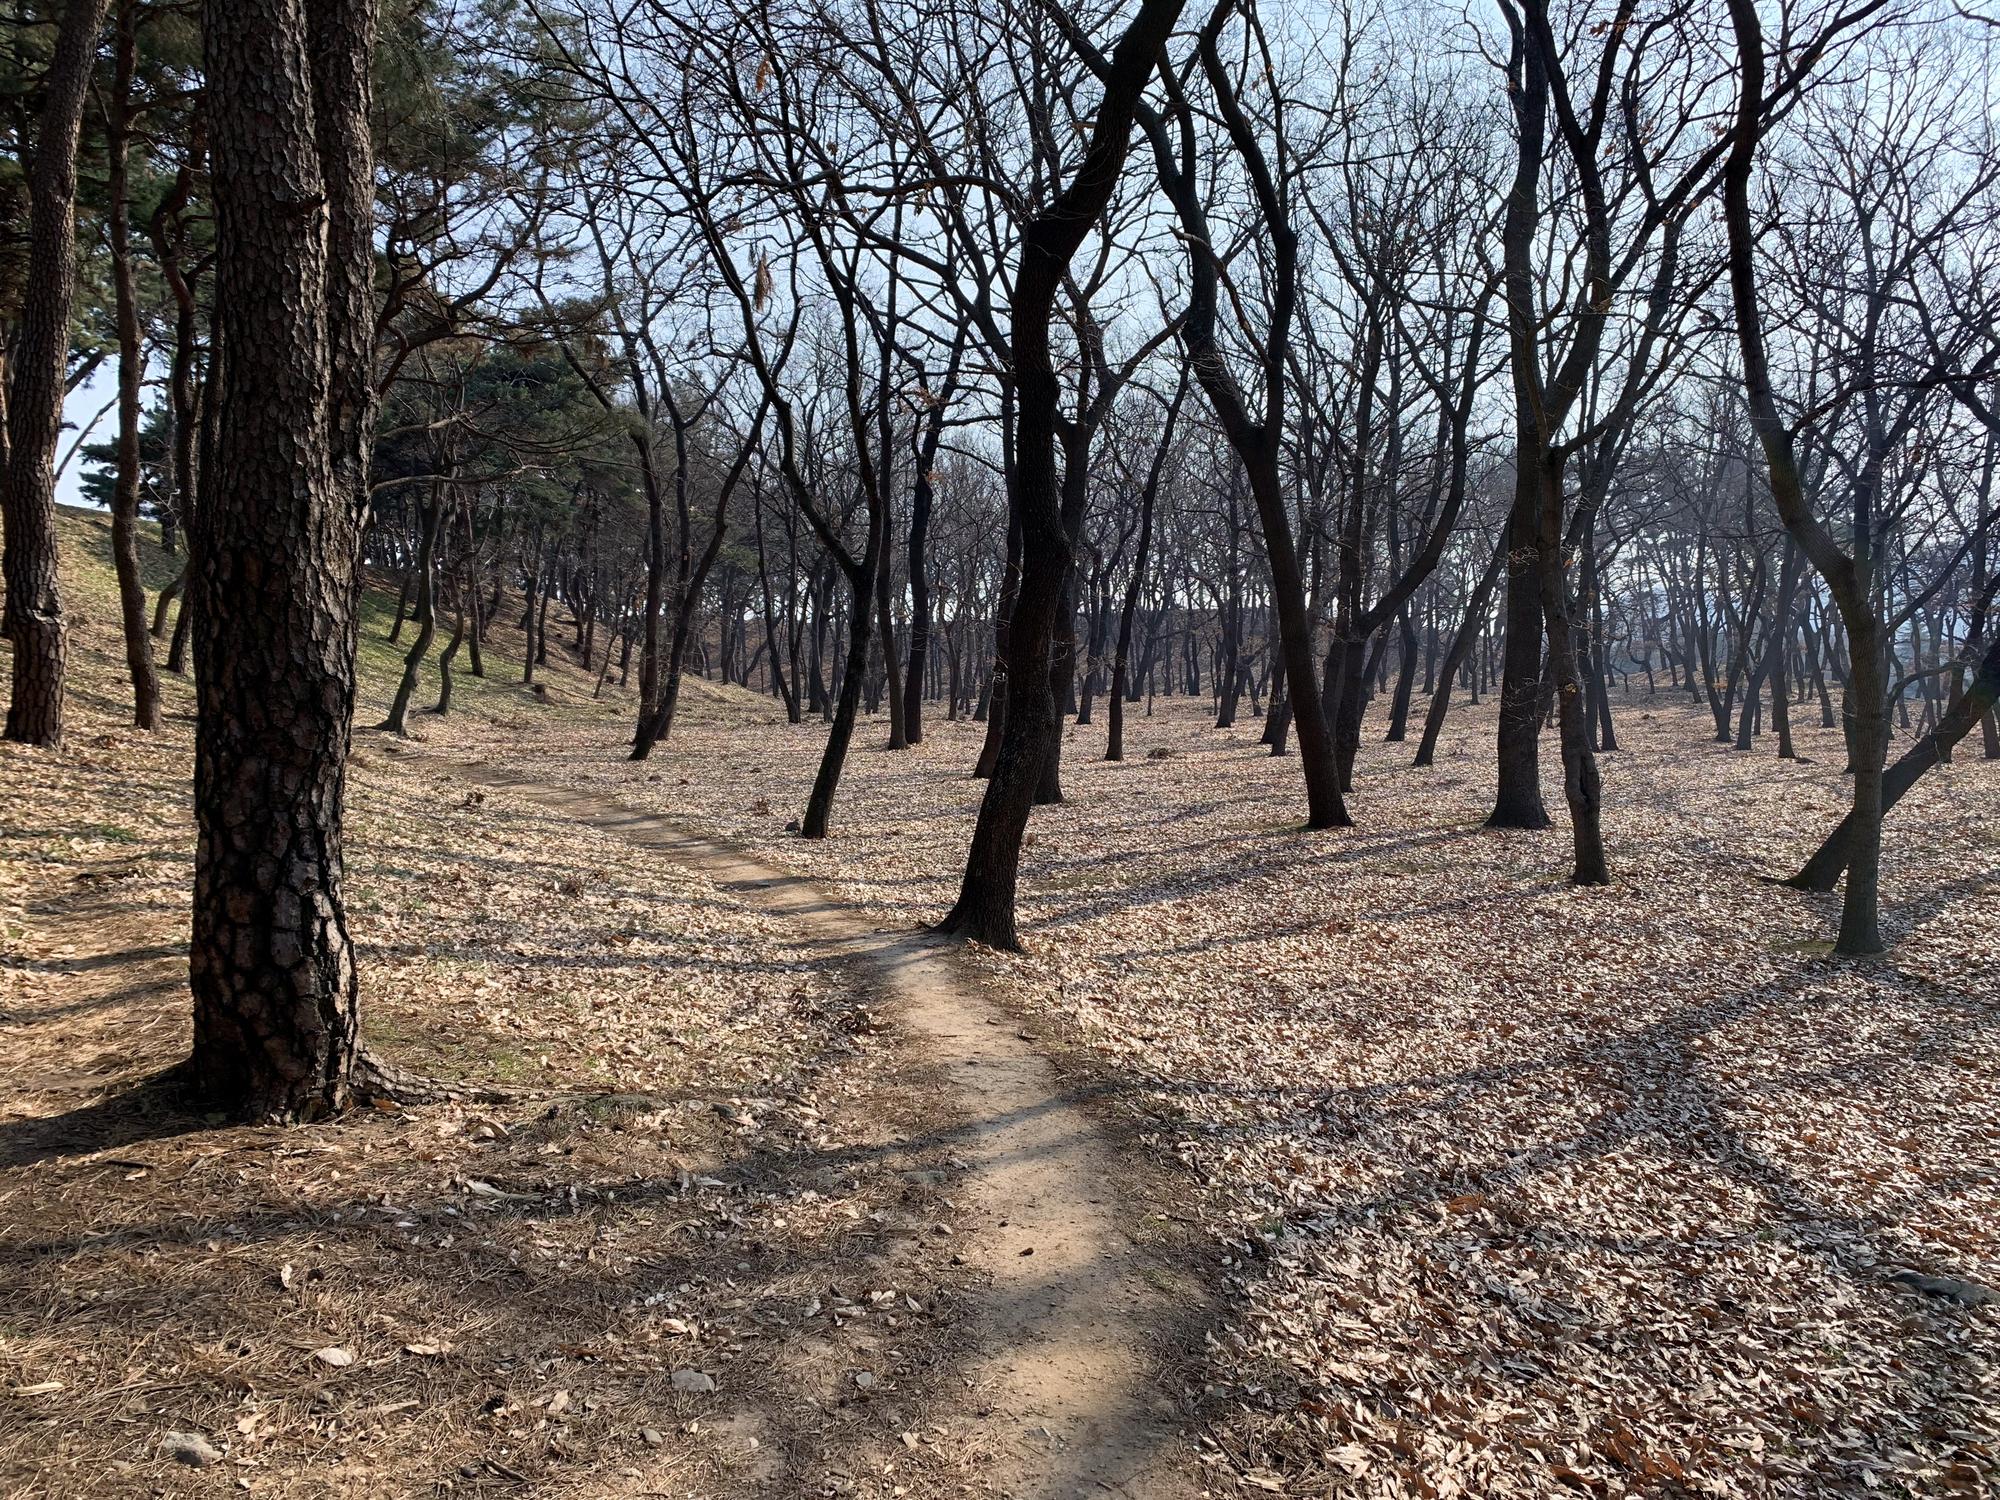 🇰🇷 Gyoengju, South Korea, January 2020.